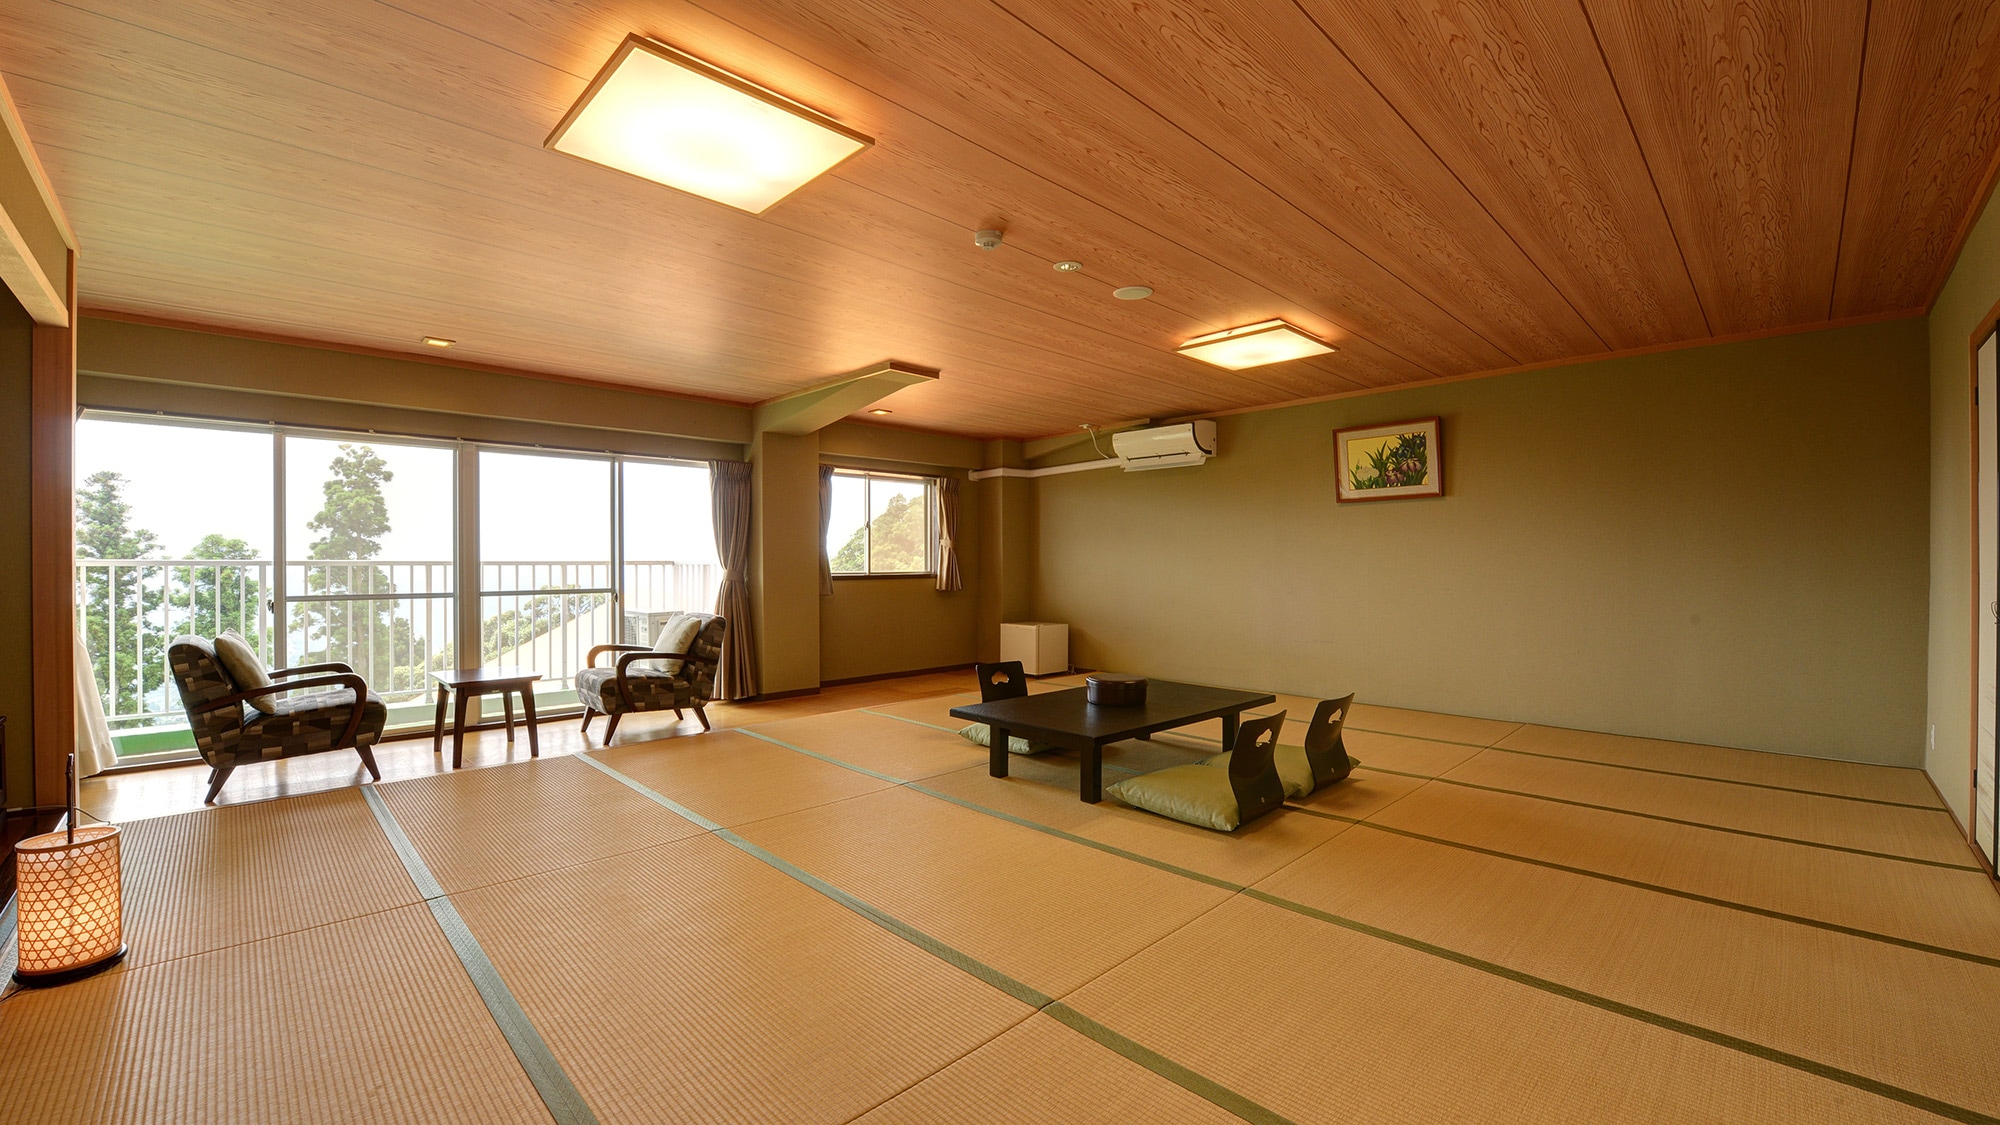 * ห้องพักสไตล์ญี่ปุ่น อาคารตะวันออก (ตัวอย่างห้องพักแขก) / หมู่คณะก็เข้าพักได้